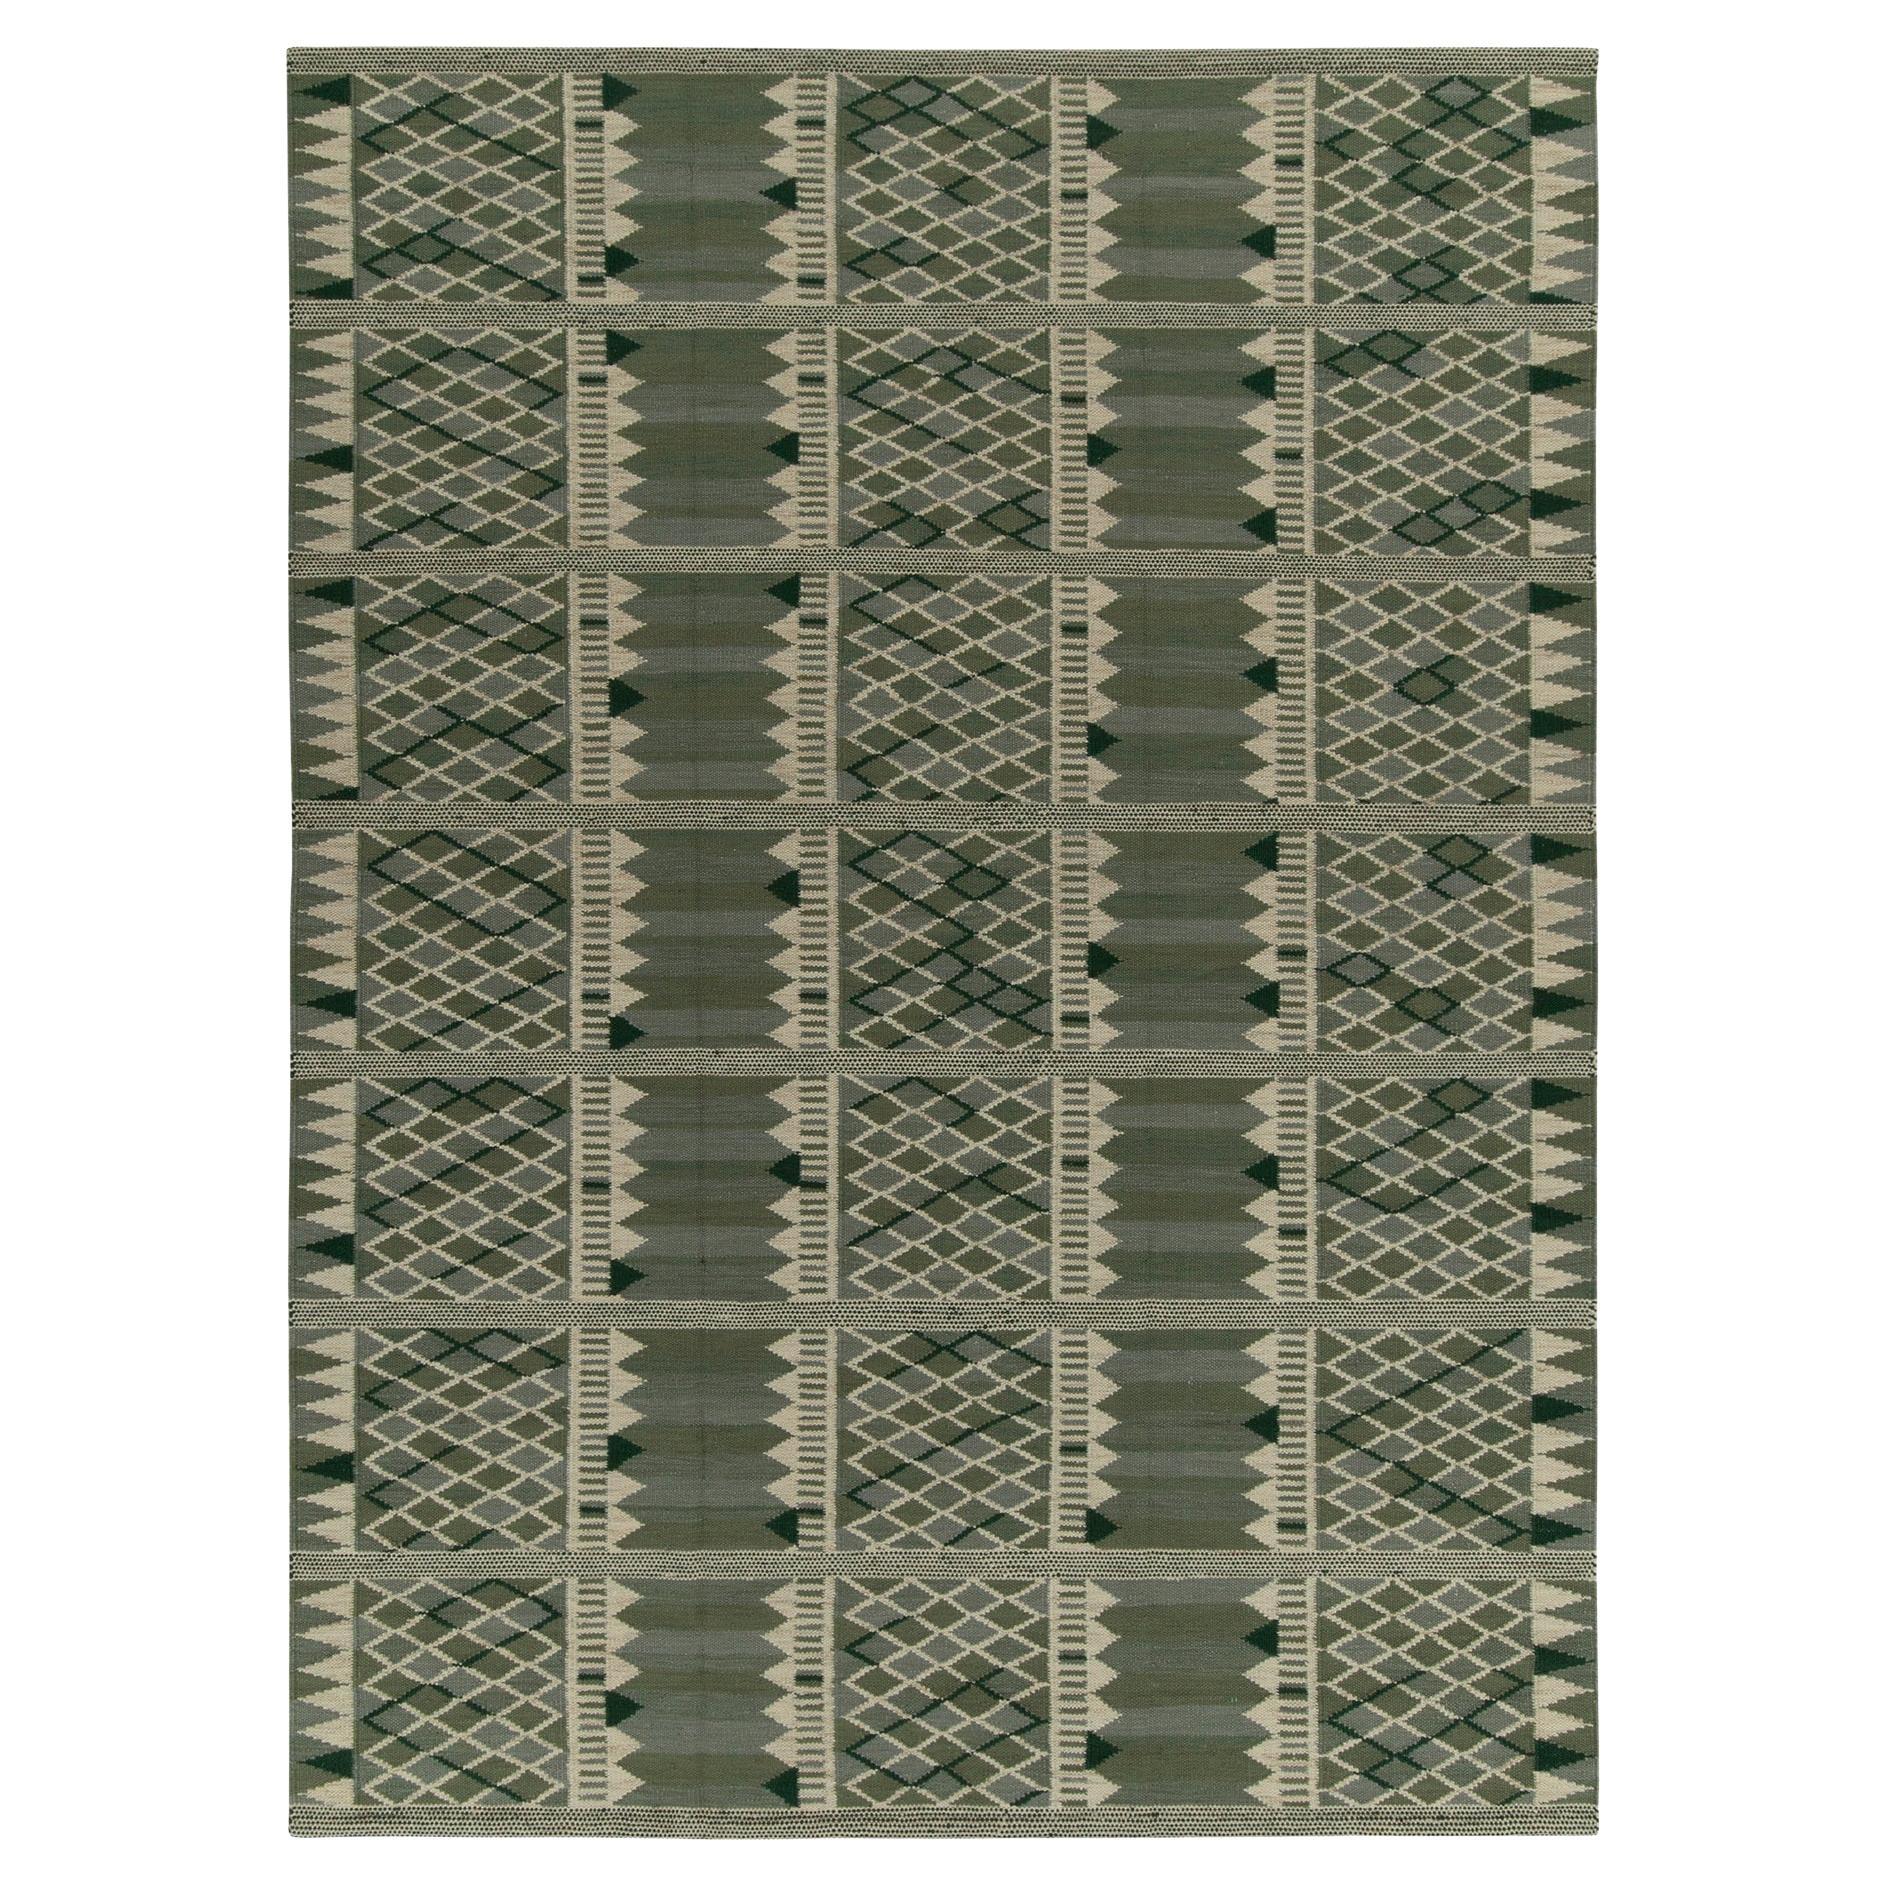 Rug & Kilim's Scandinavian Style Kilim in Green & White Geometric Pattern (Kilim de style scandinave à motif géométrique vert et blanc)